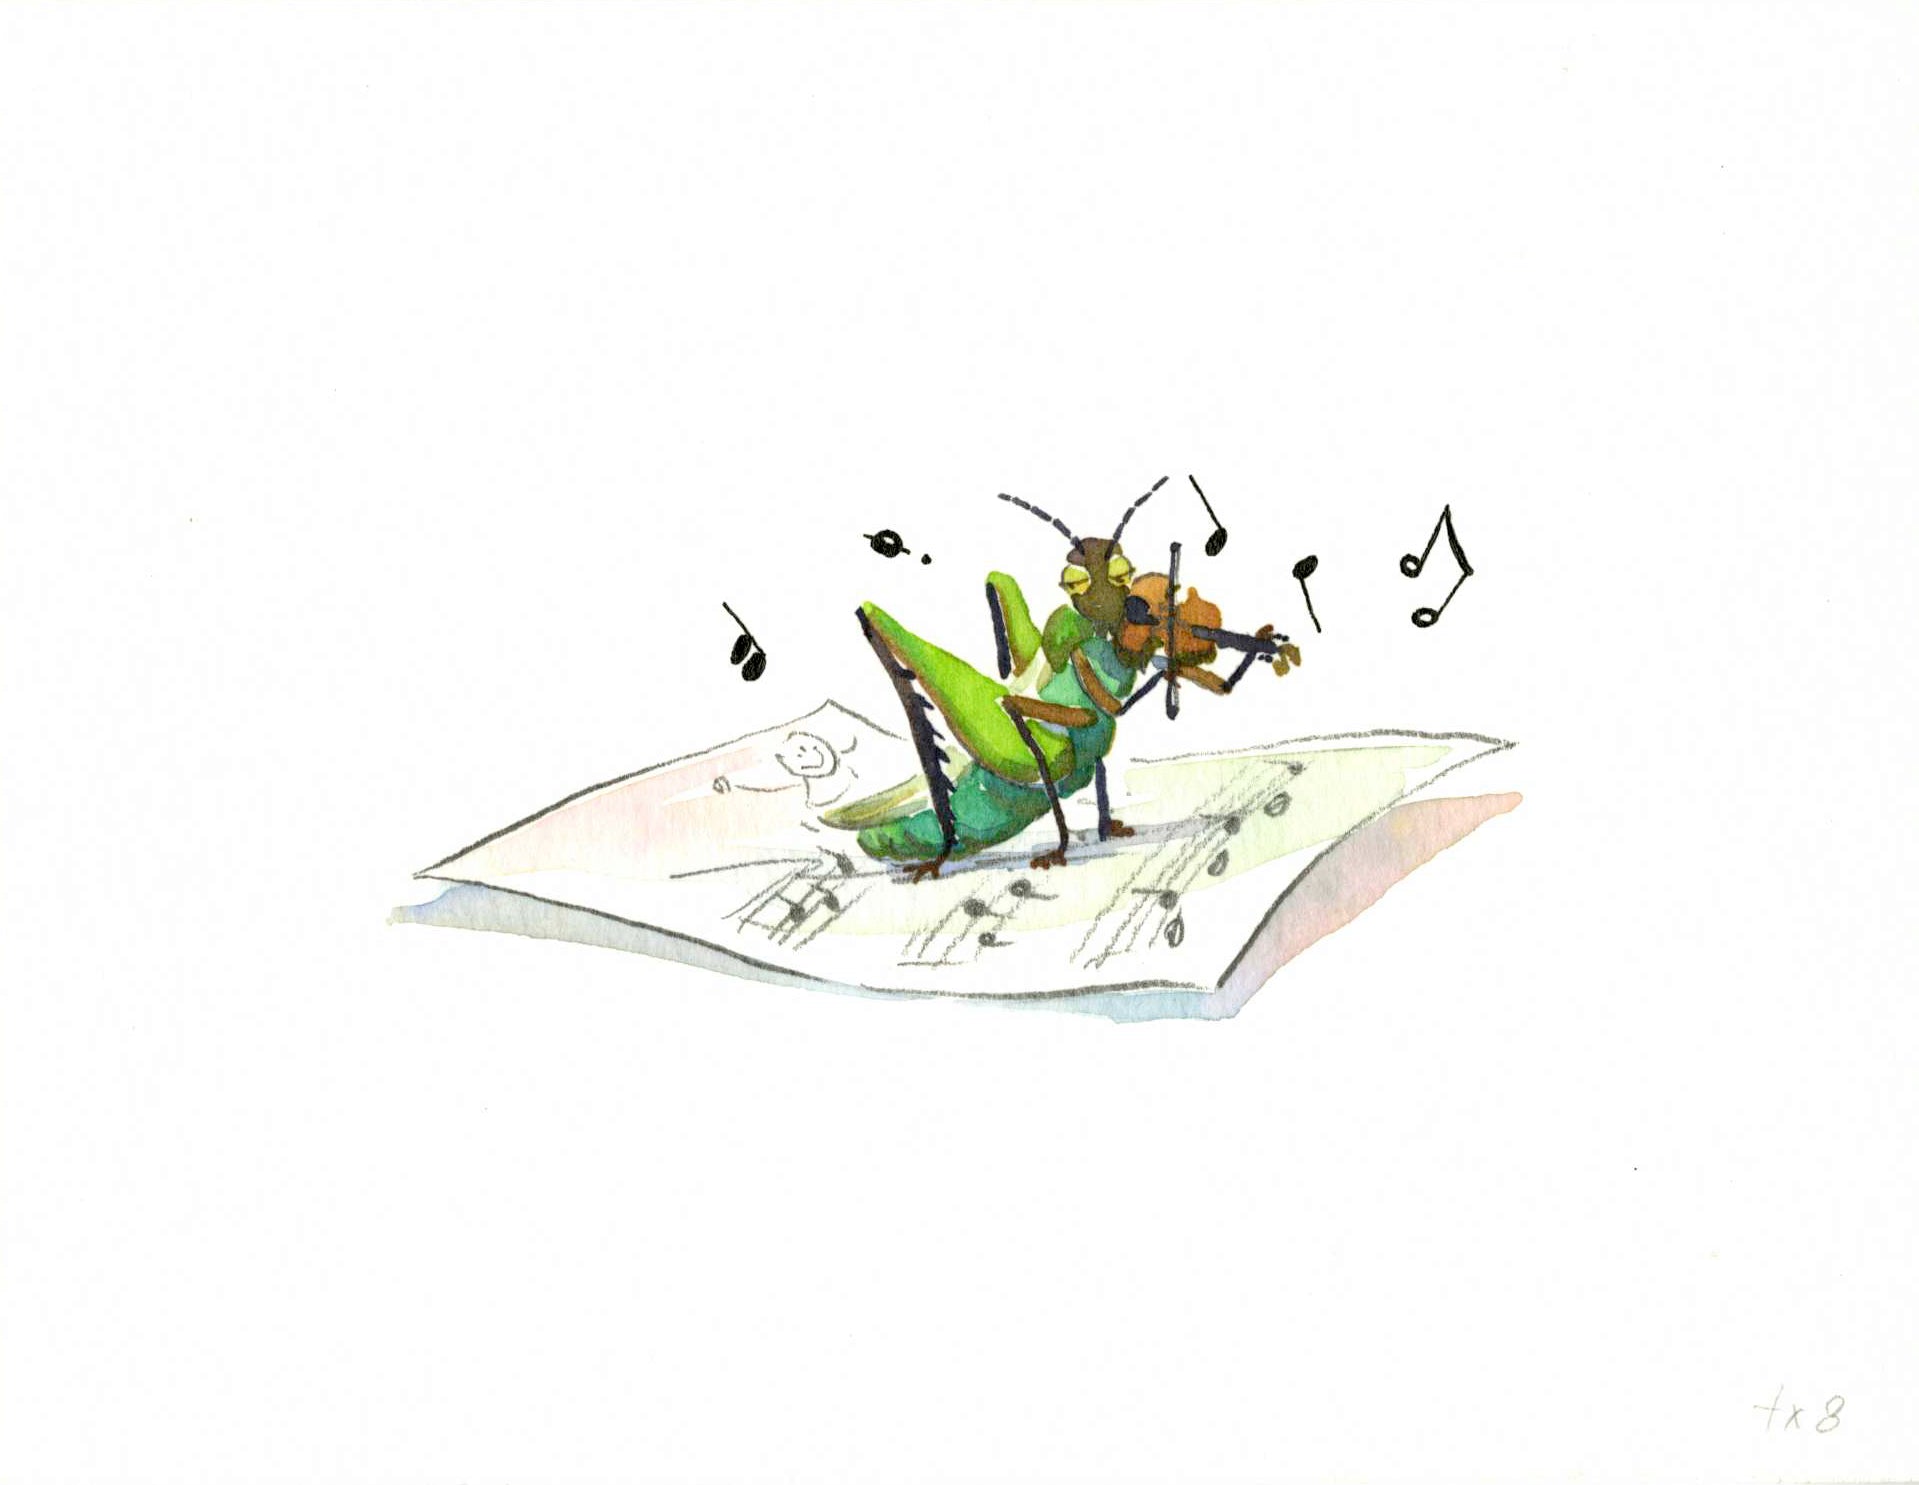 Piano Potential - Violin Grasshopper Spot